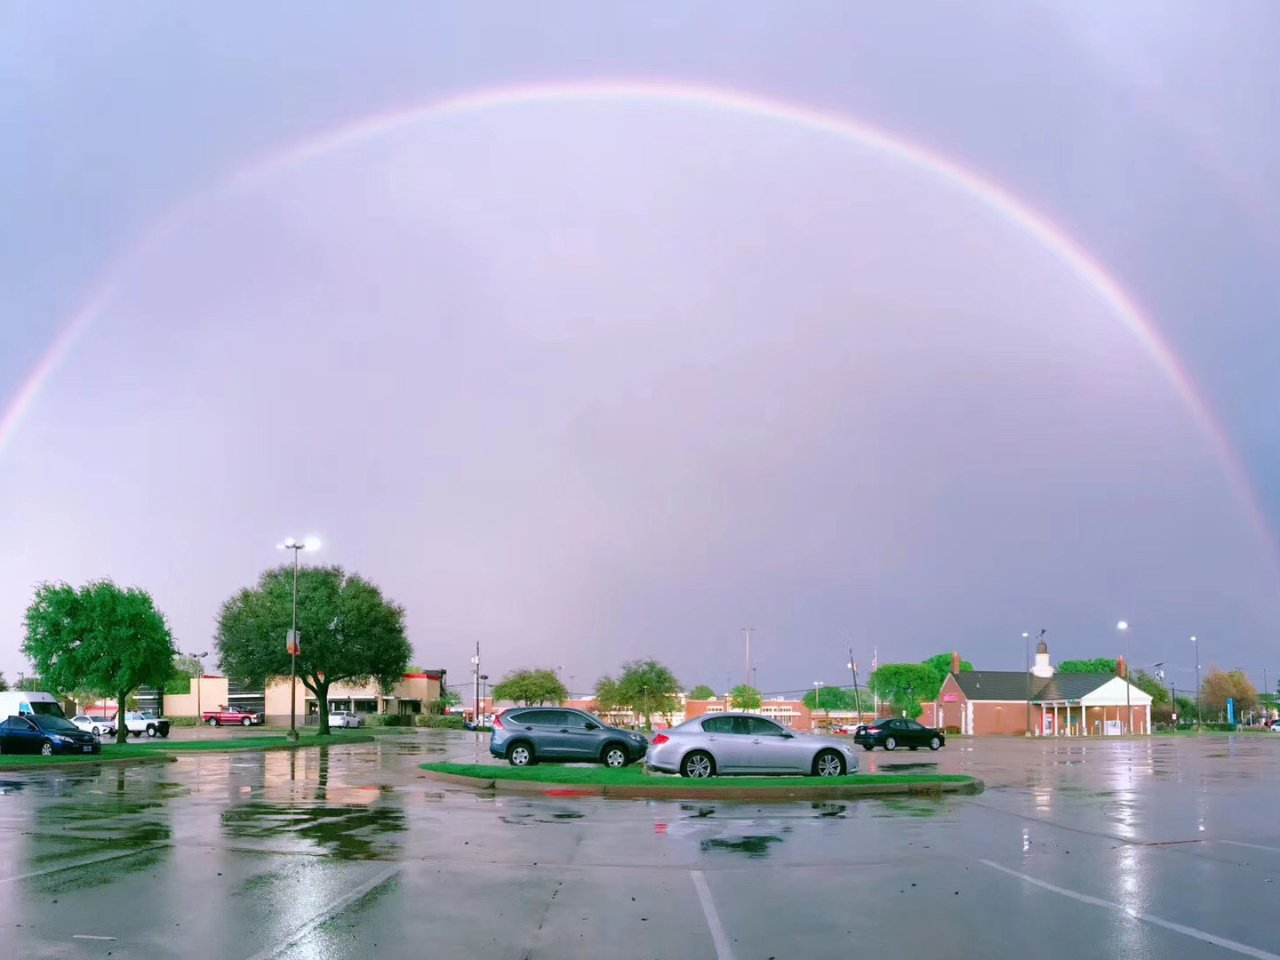 暴风雨之后的双彩虹🌈...